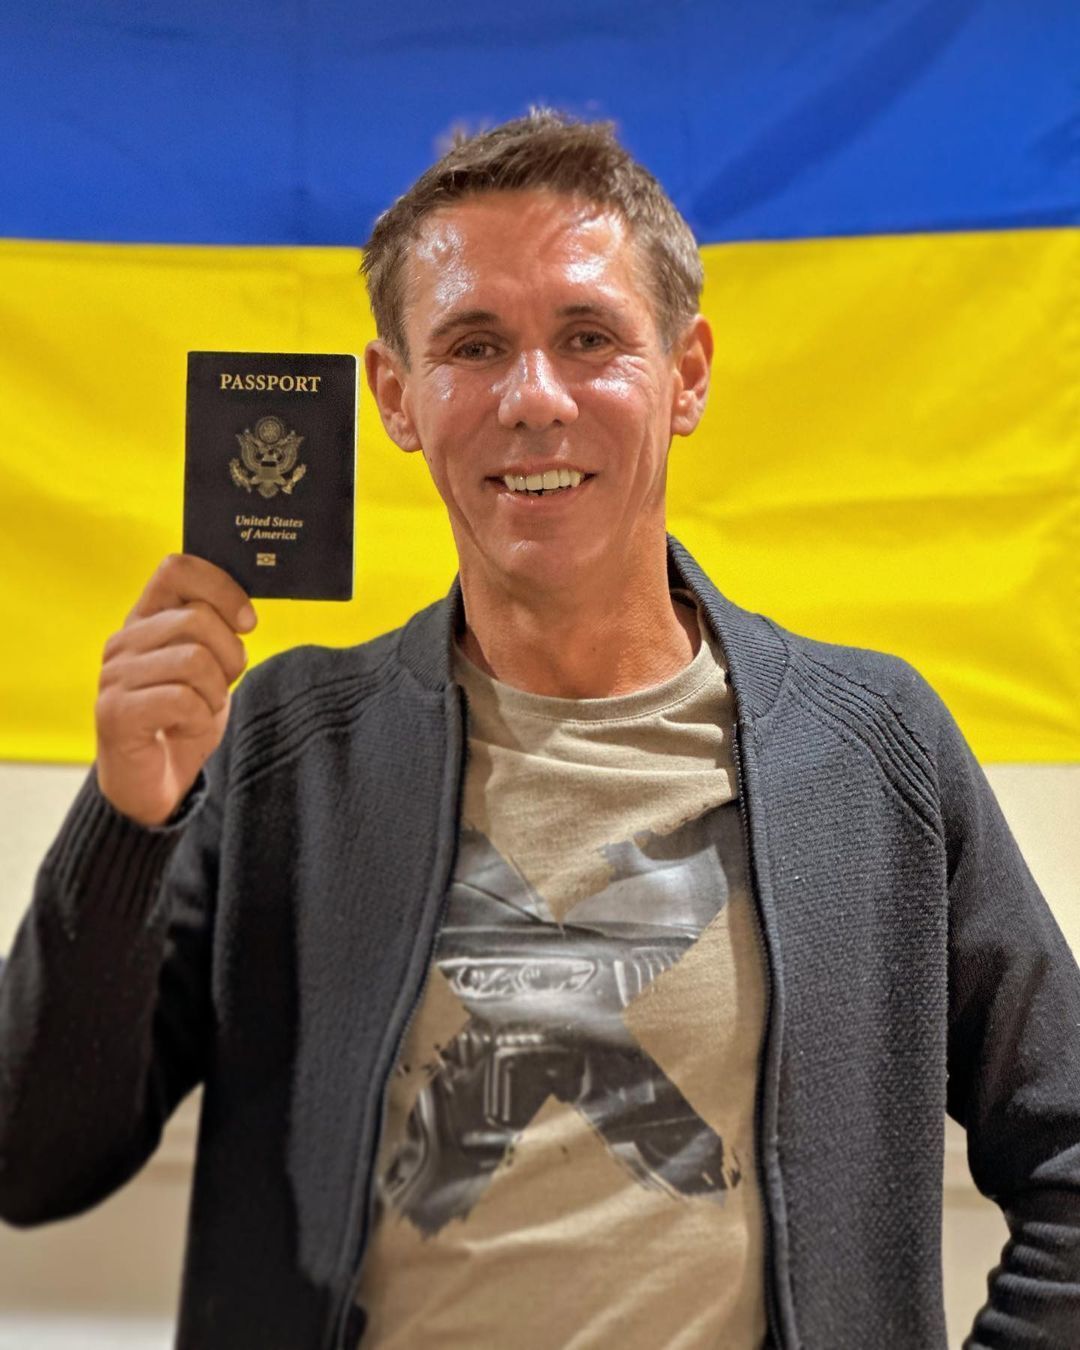 Российский актер Алексей Панин показал новый паспорт на фоне флага Украины